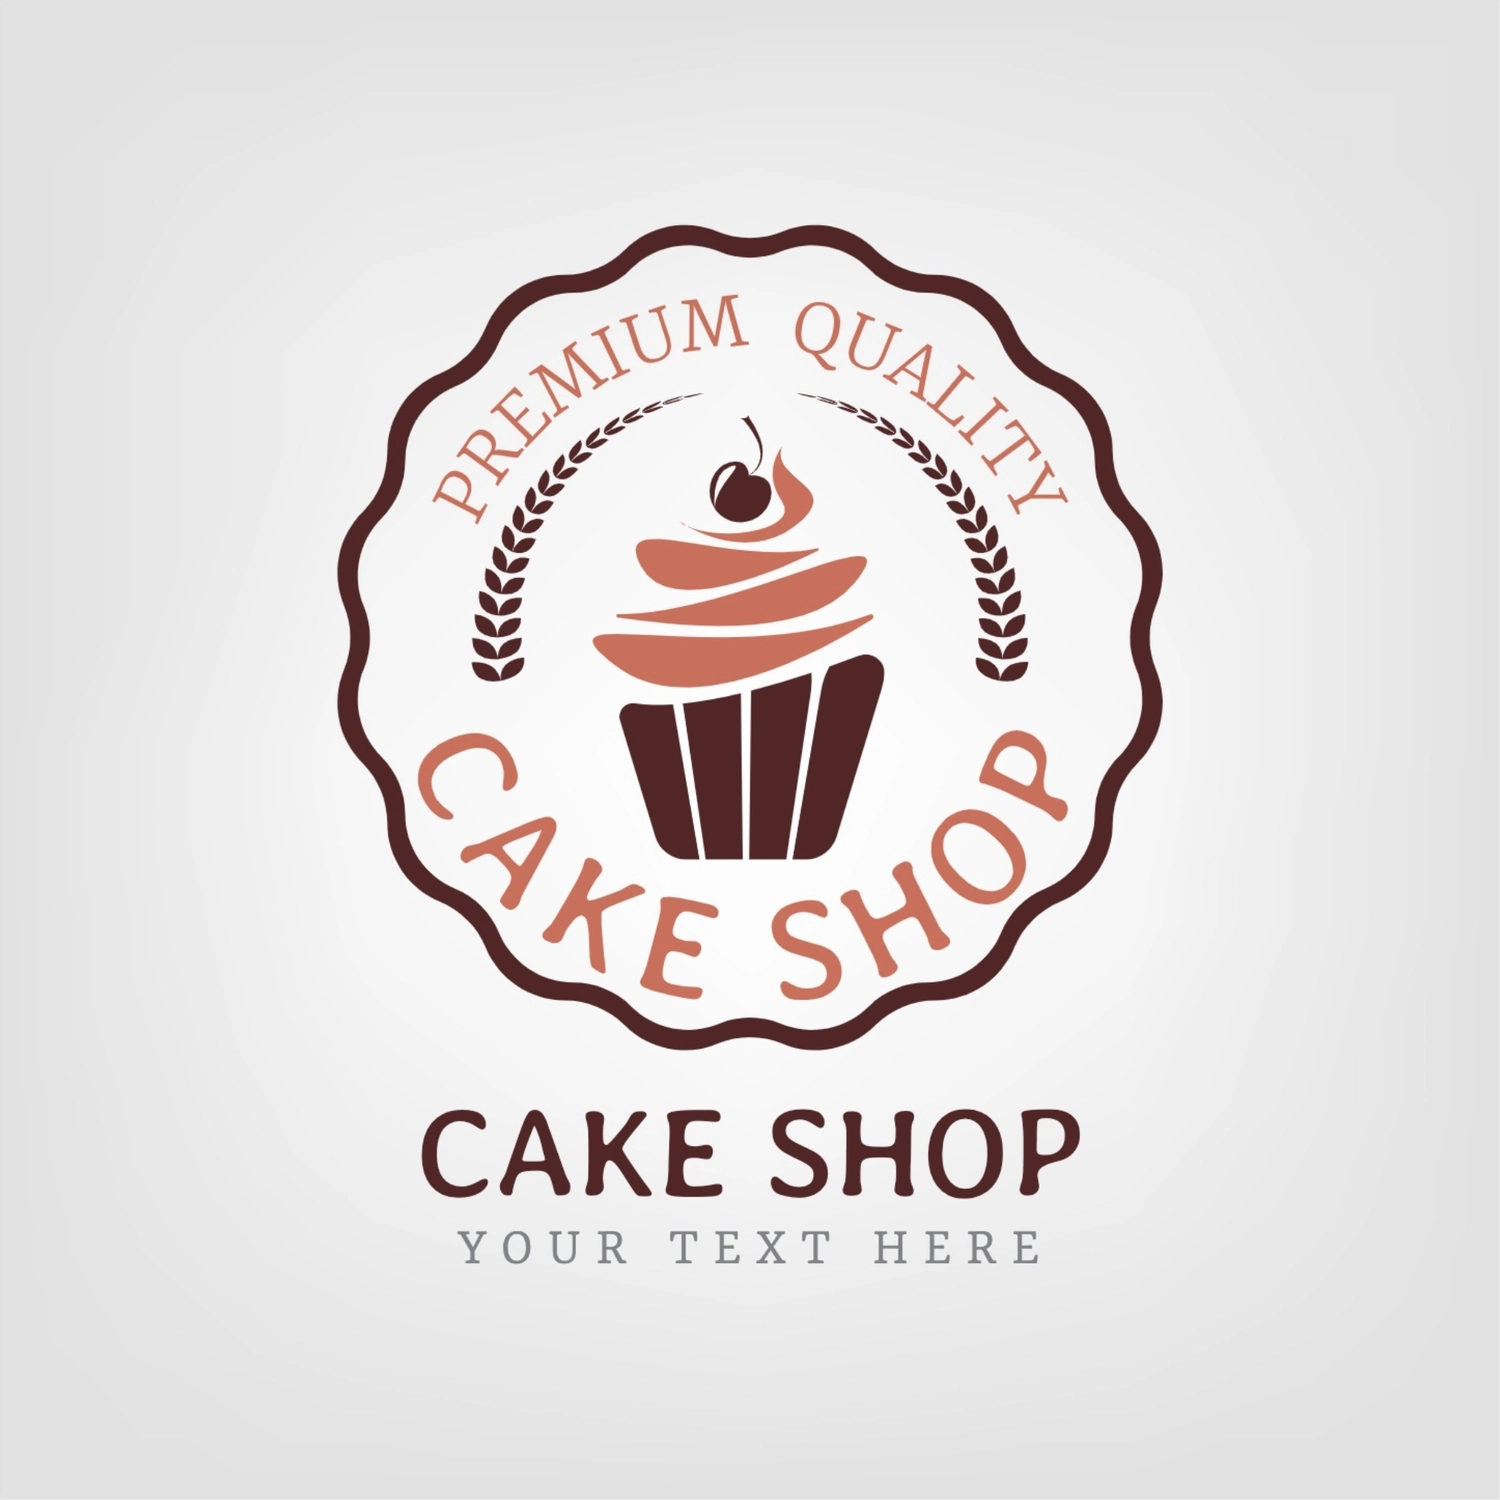 ケーキ屋のロゴ, かわいい, 作成, デザイン, ロゴテンプレート